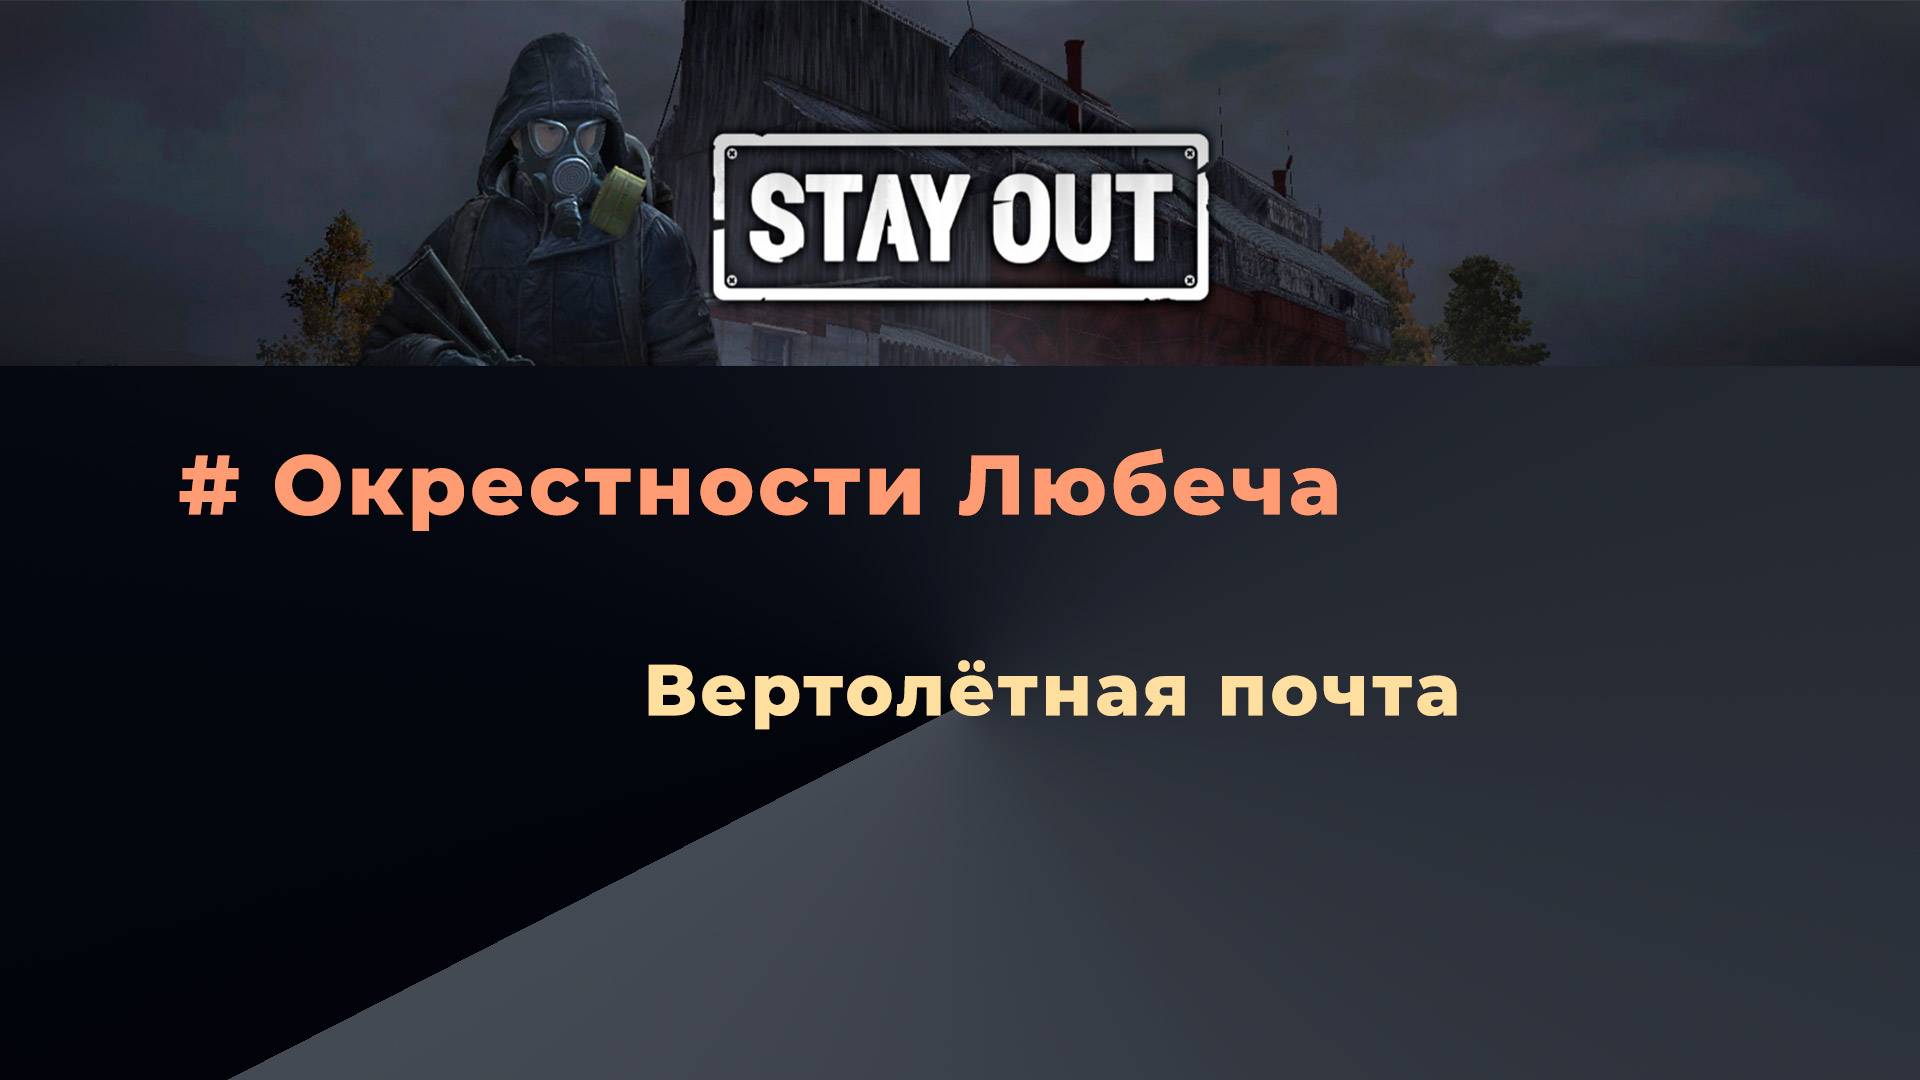 Stay Out_Вертолетная почта_Прохождение